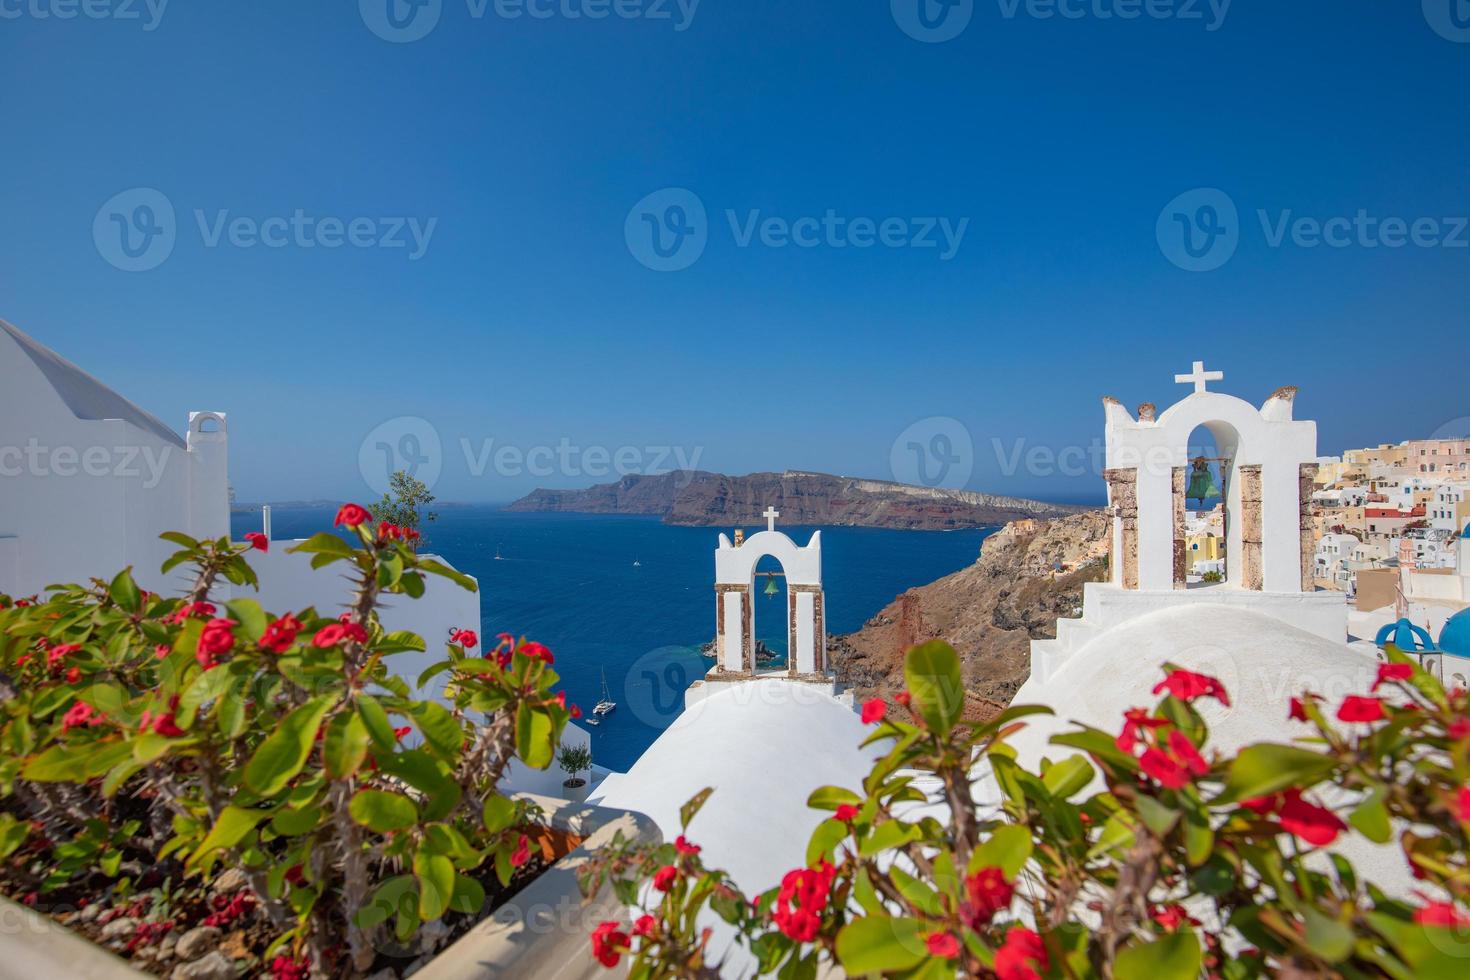 zomervakantie panorama, luxe beroemde bestemming van europa. witte architectuur in santorini, griekenland. perfect reislandschap met roze bloemen en cruiseschip in zonlicht en blauwe lucht. prachtig uitzicht foto